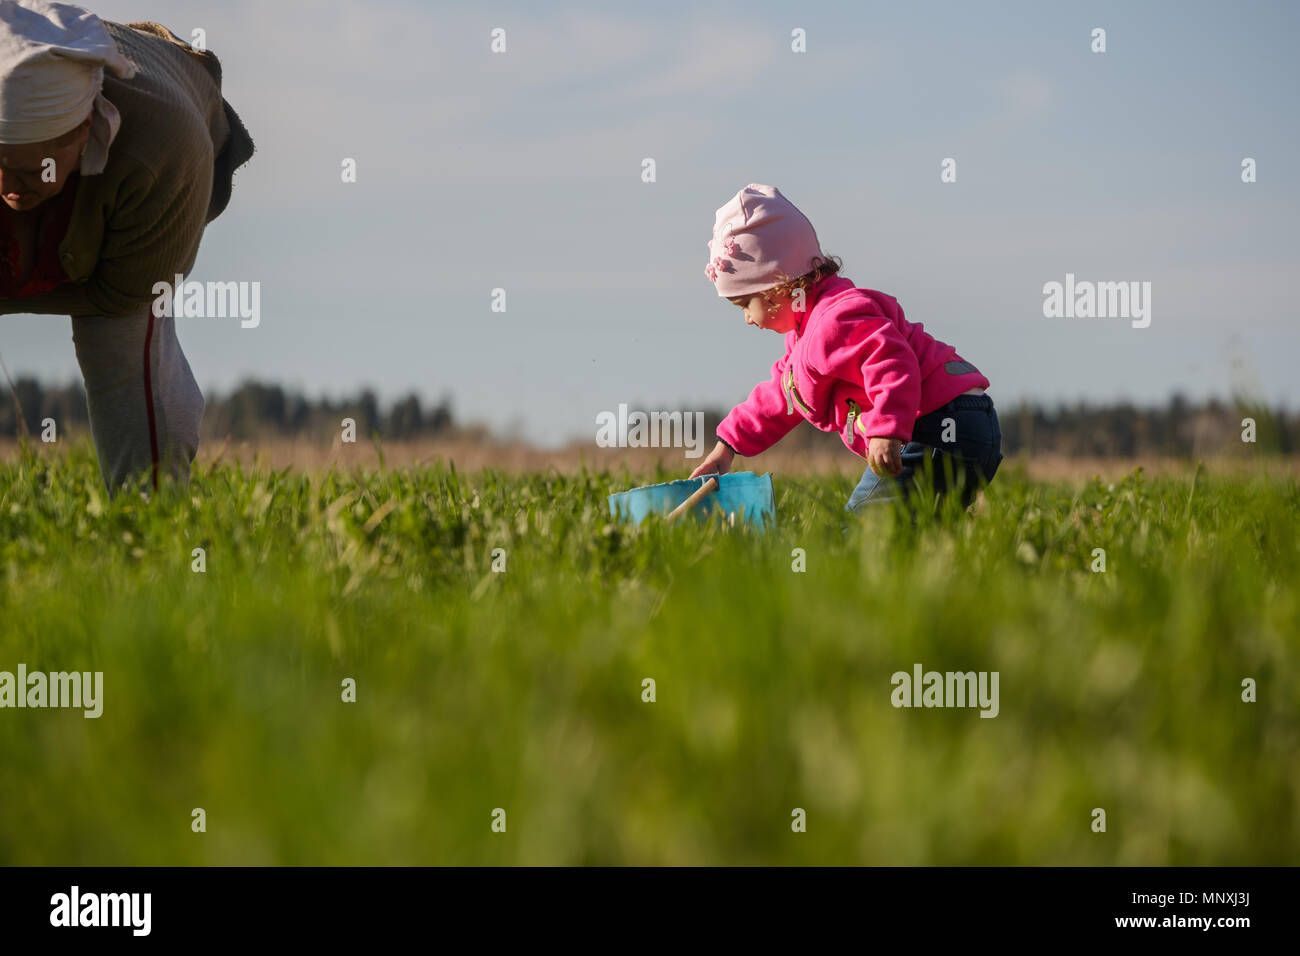 Abuela y nieta de poco trabajo en el campo Foto de stock